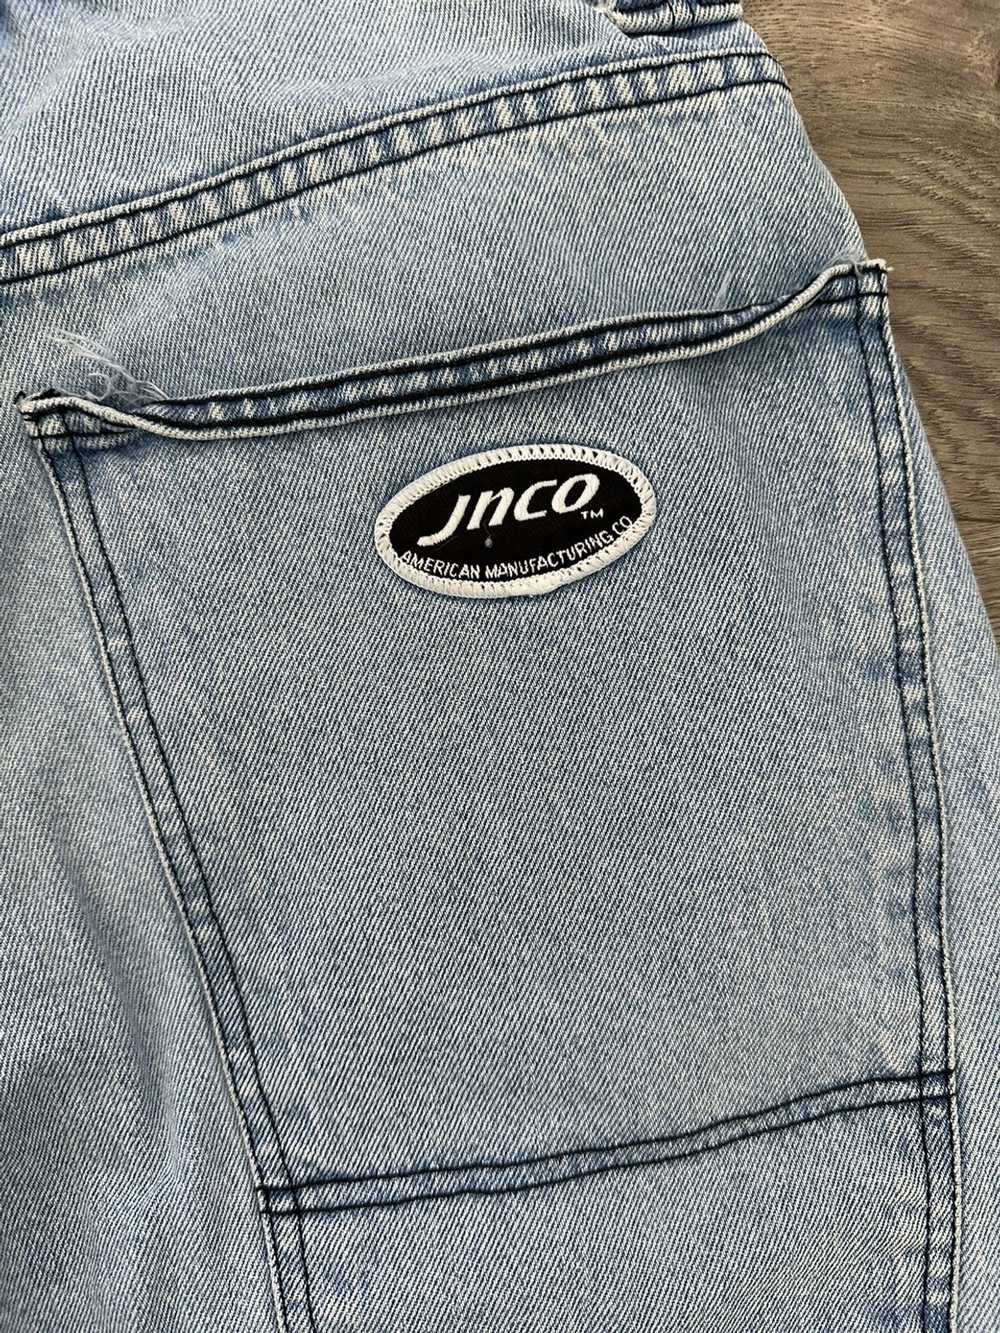 Jnco × Streetwear × Vintage Vintage jnco jeans sh… - image 7